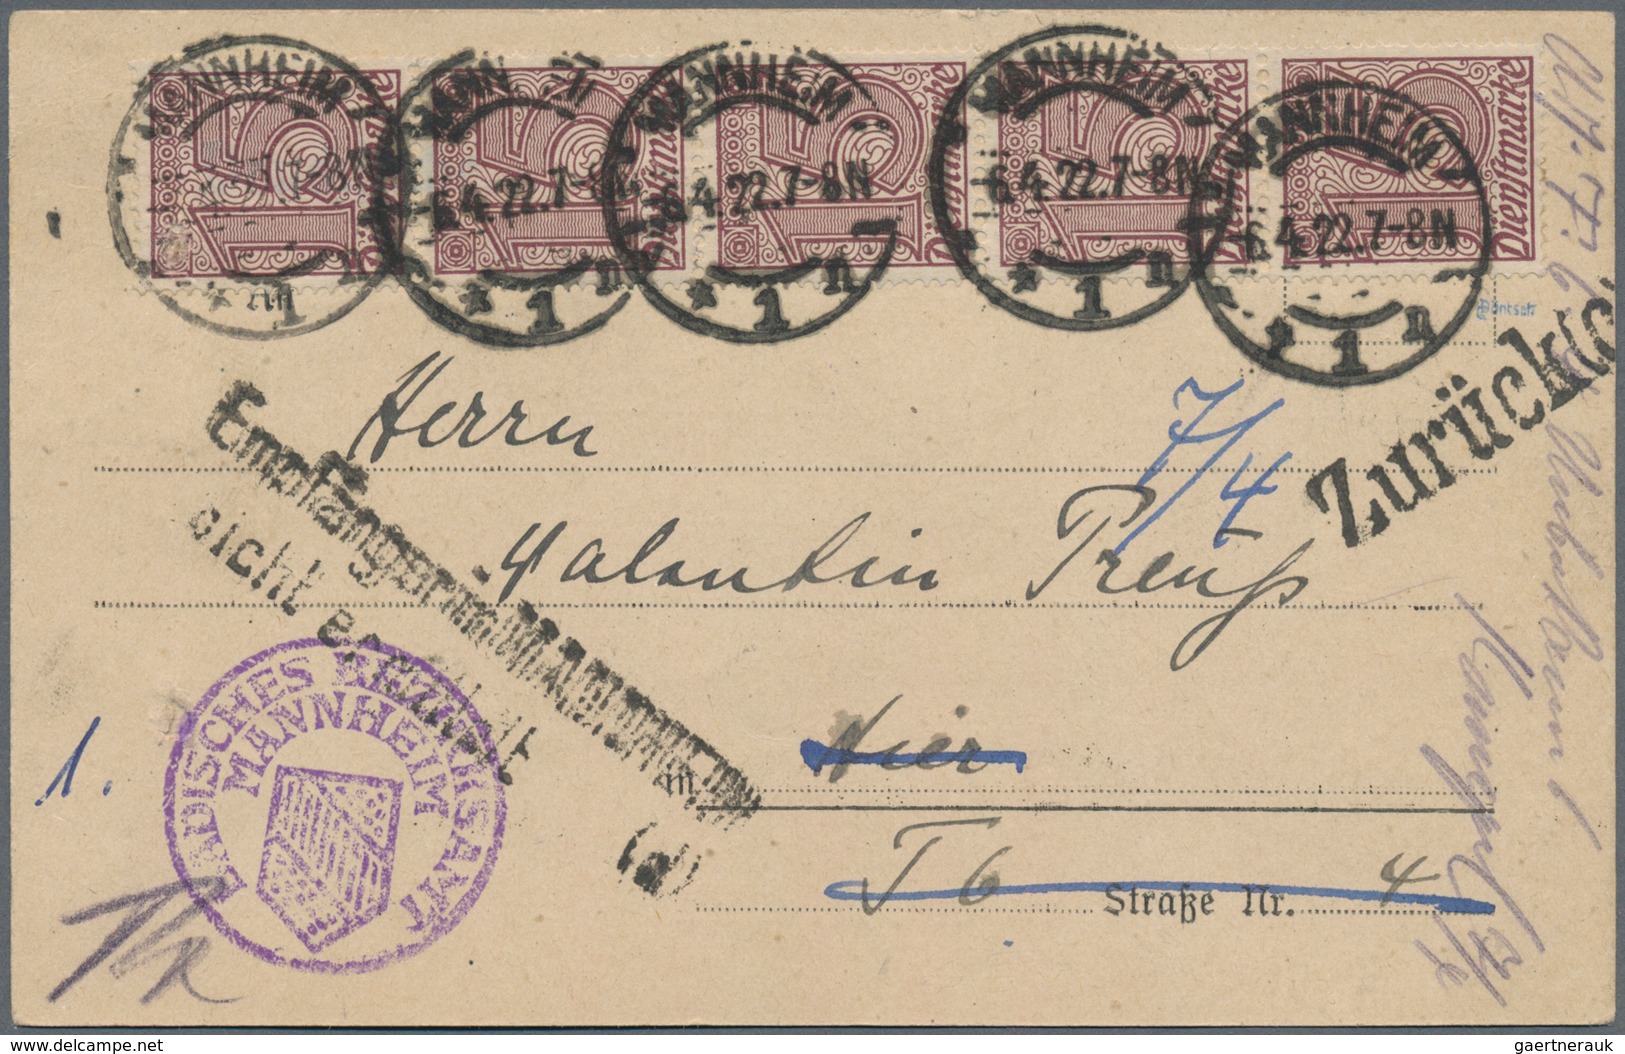 Deutsches Reich - Inflation: 1919/1923, ORTSPOST der INFLATIONS-ZEIT, sehr reichhaltiger Sammlungsbe